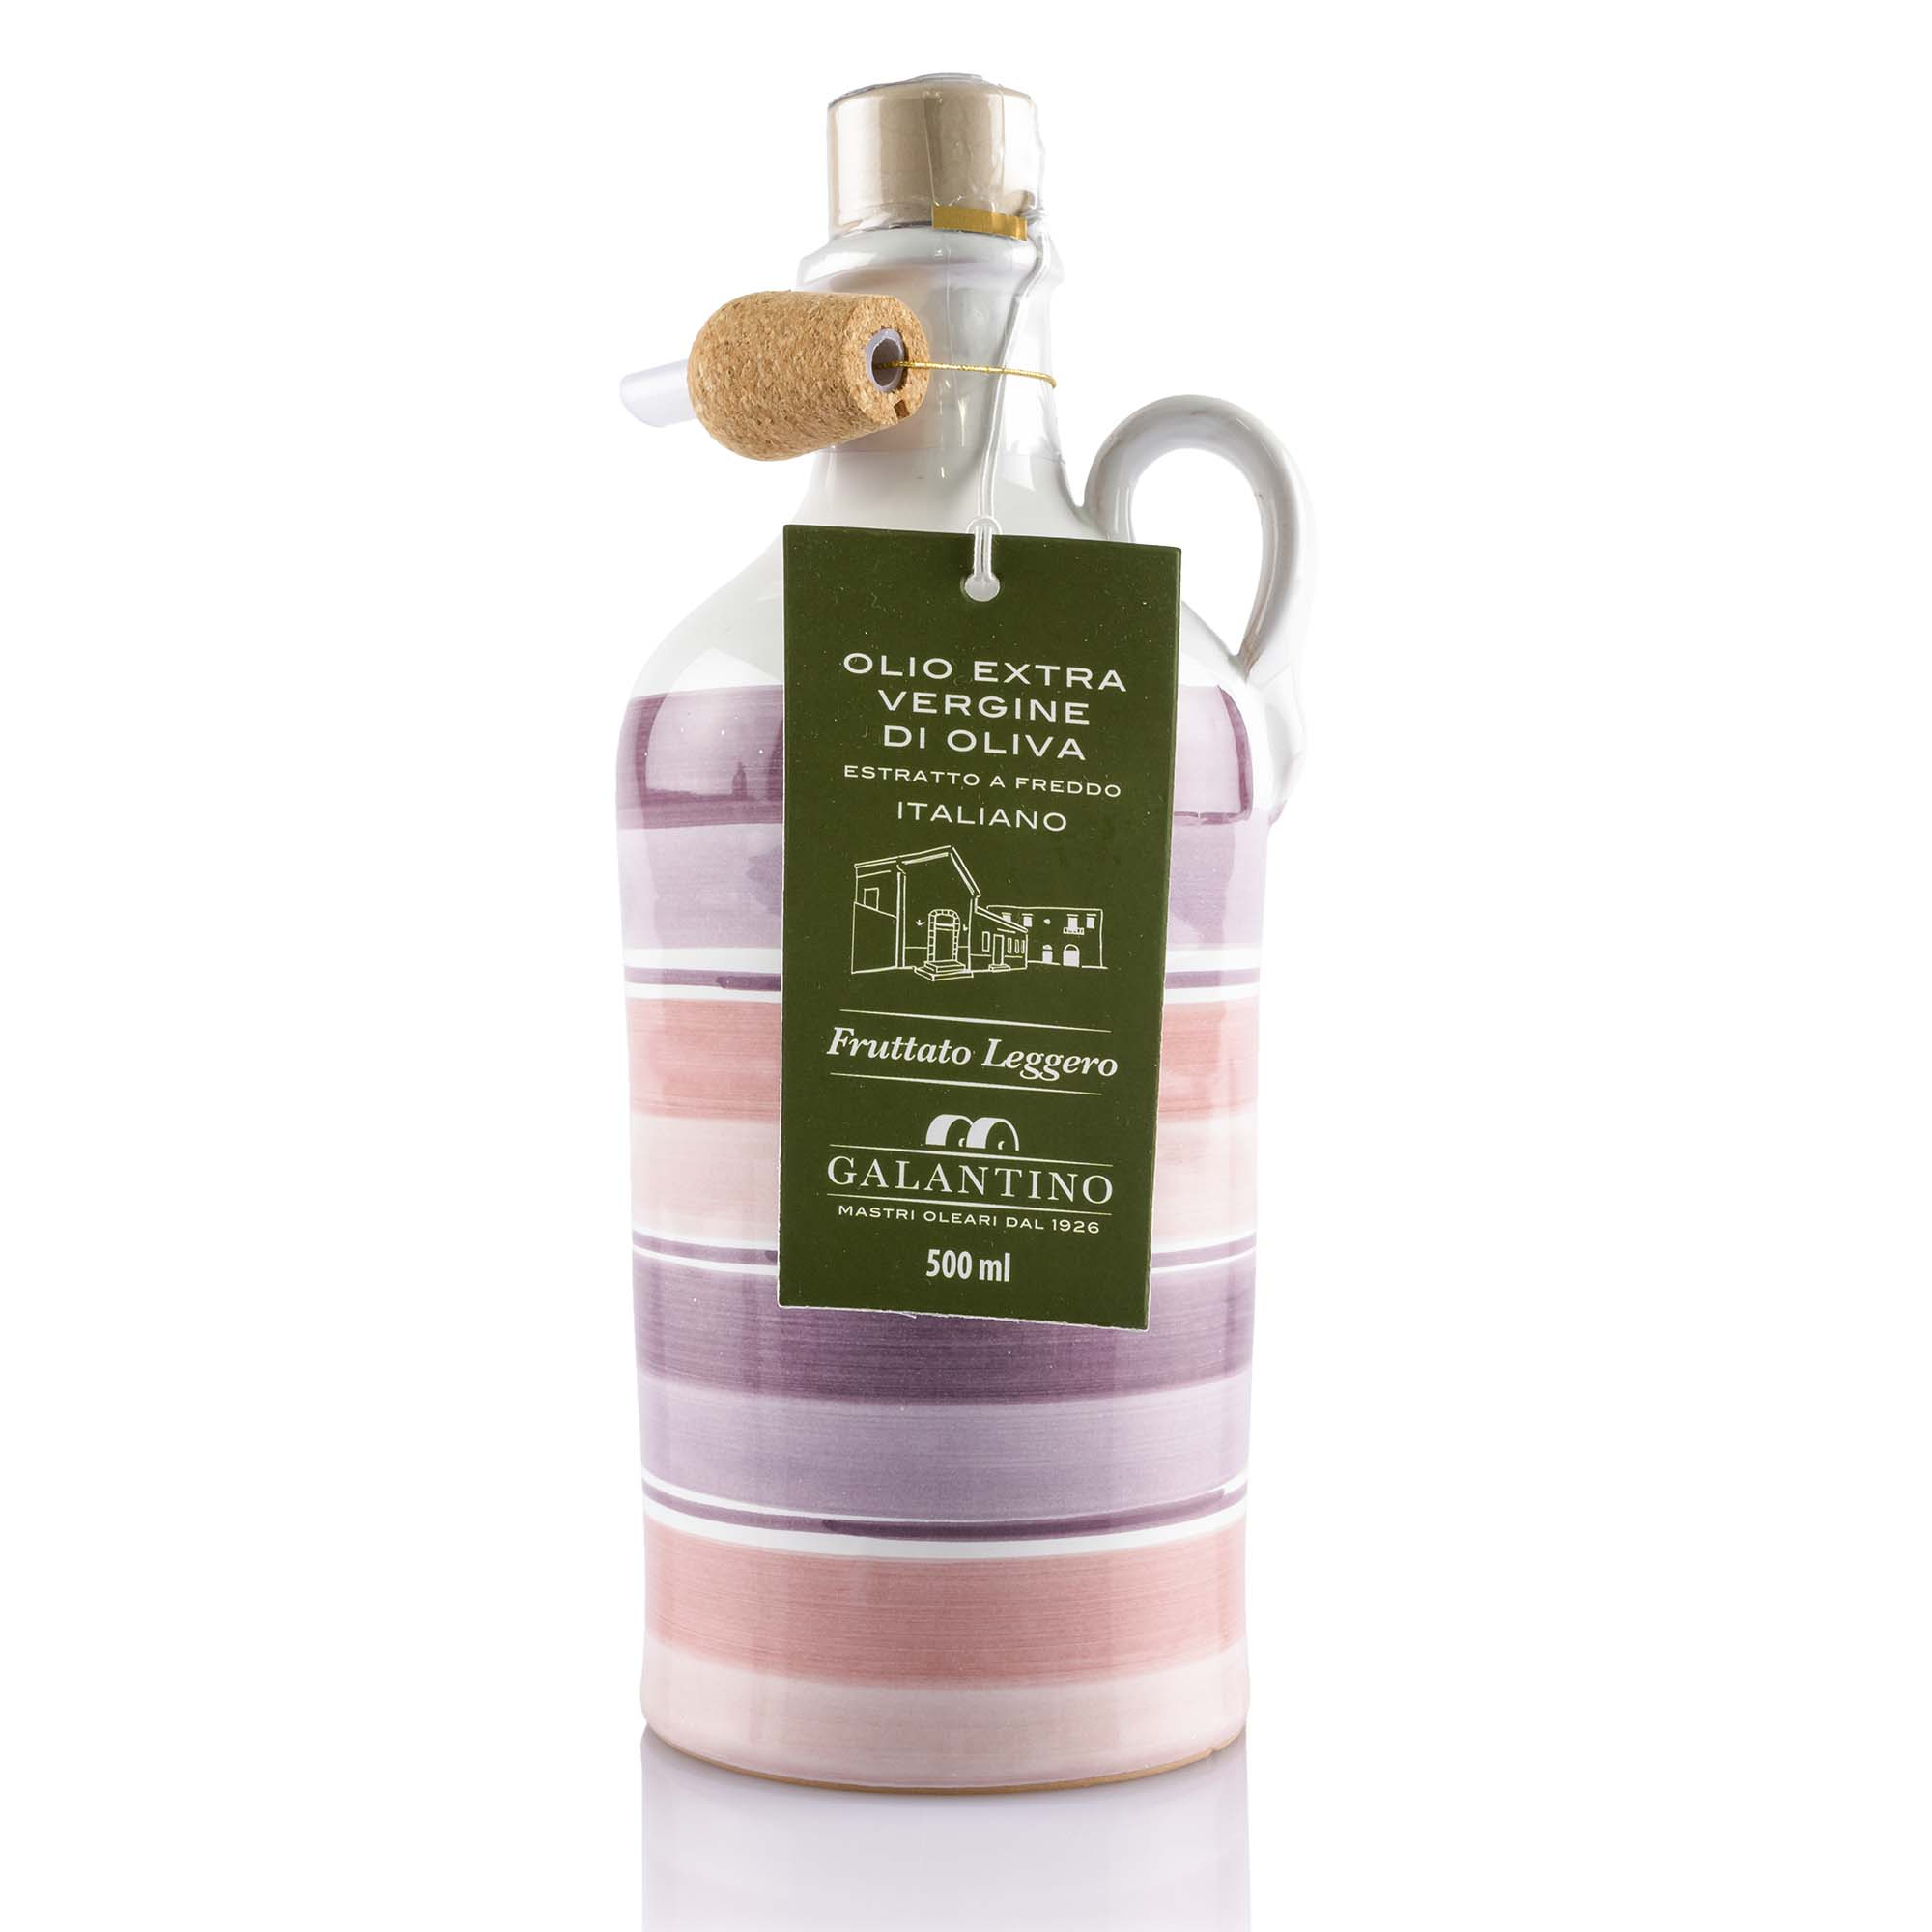 Olio extra vergine di oliva im Tonkrug mit rosa Streifen von Galantino, 50cl